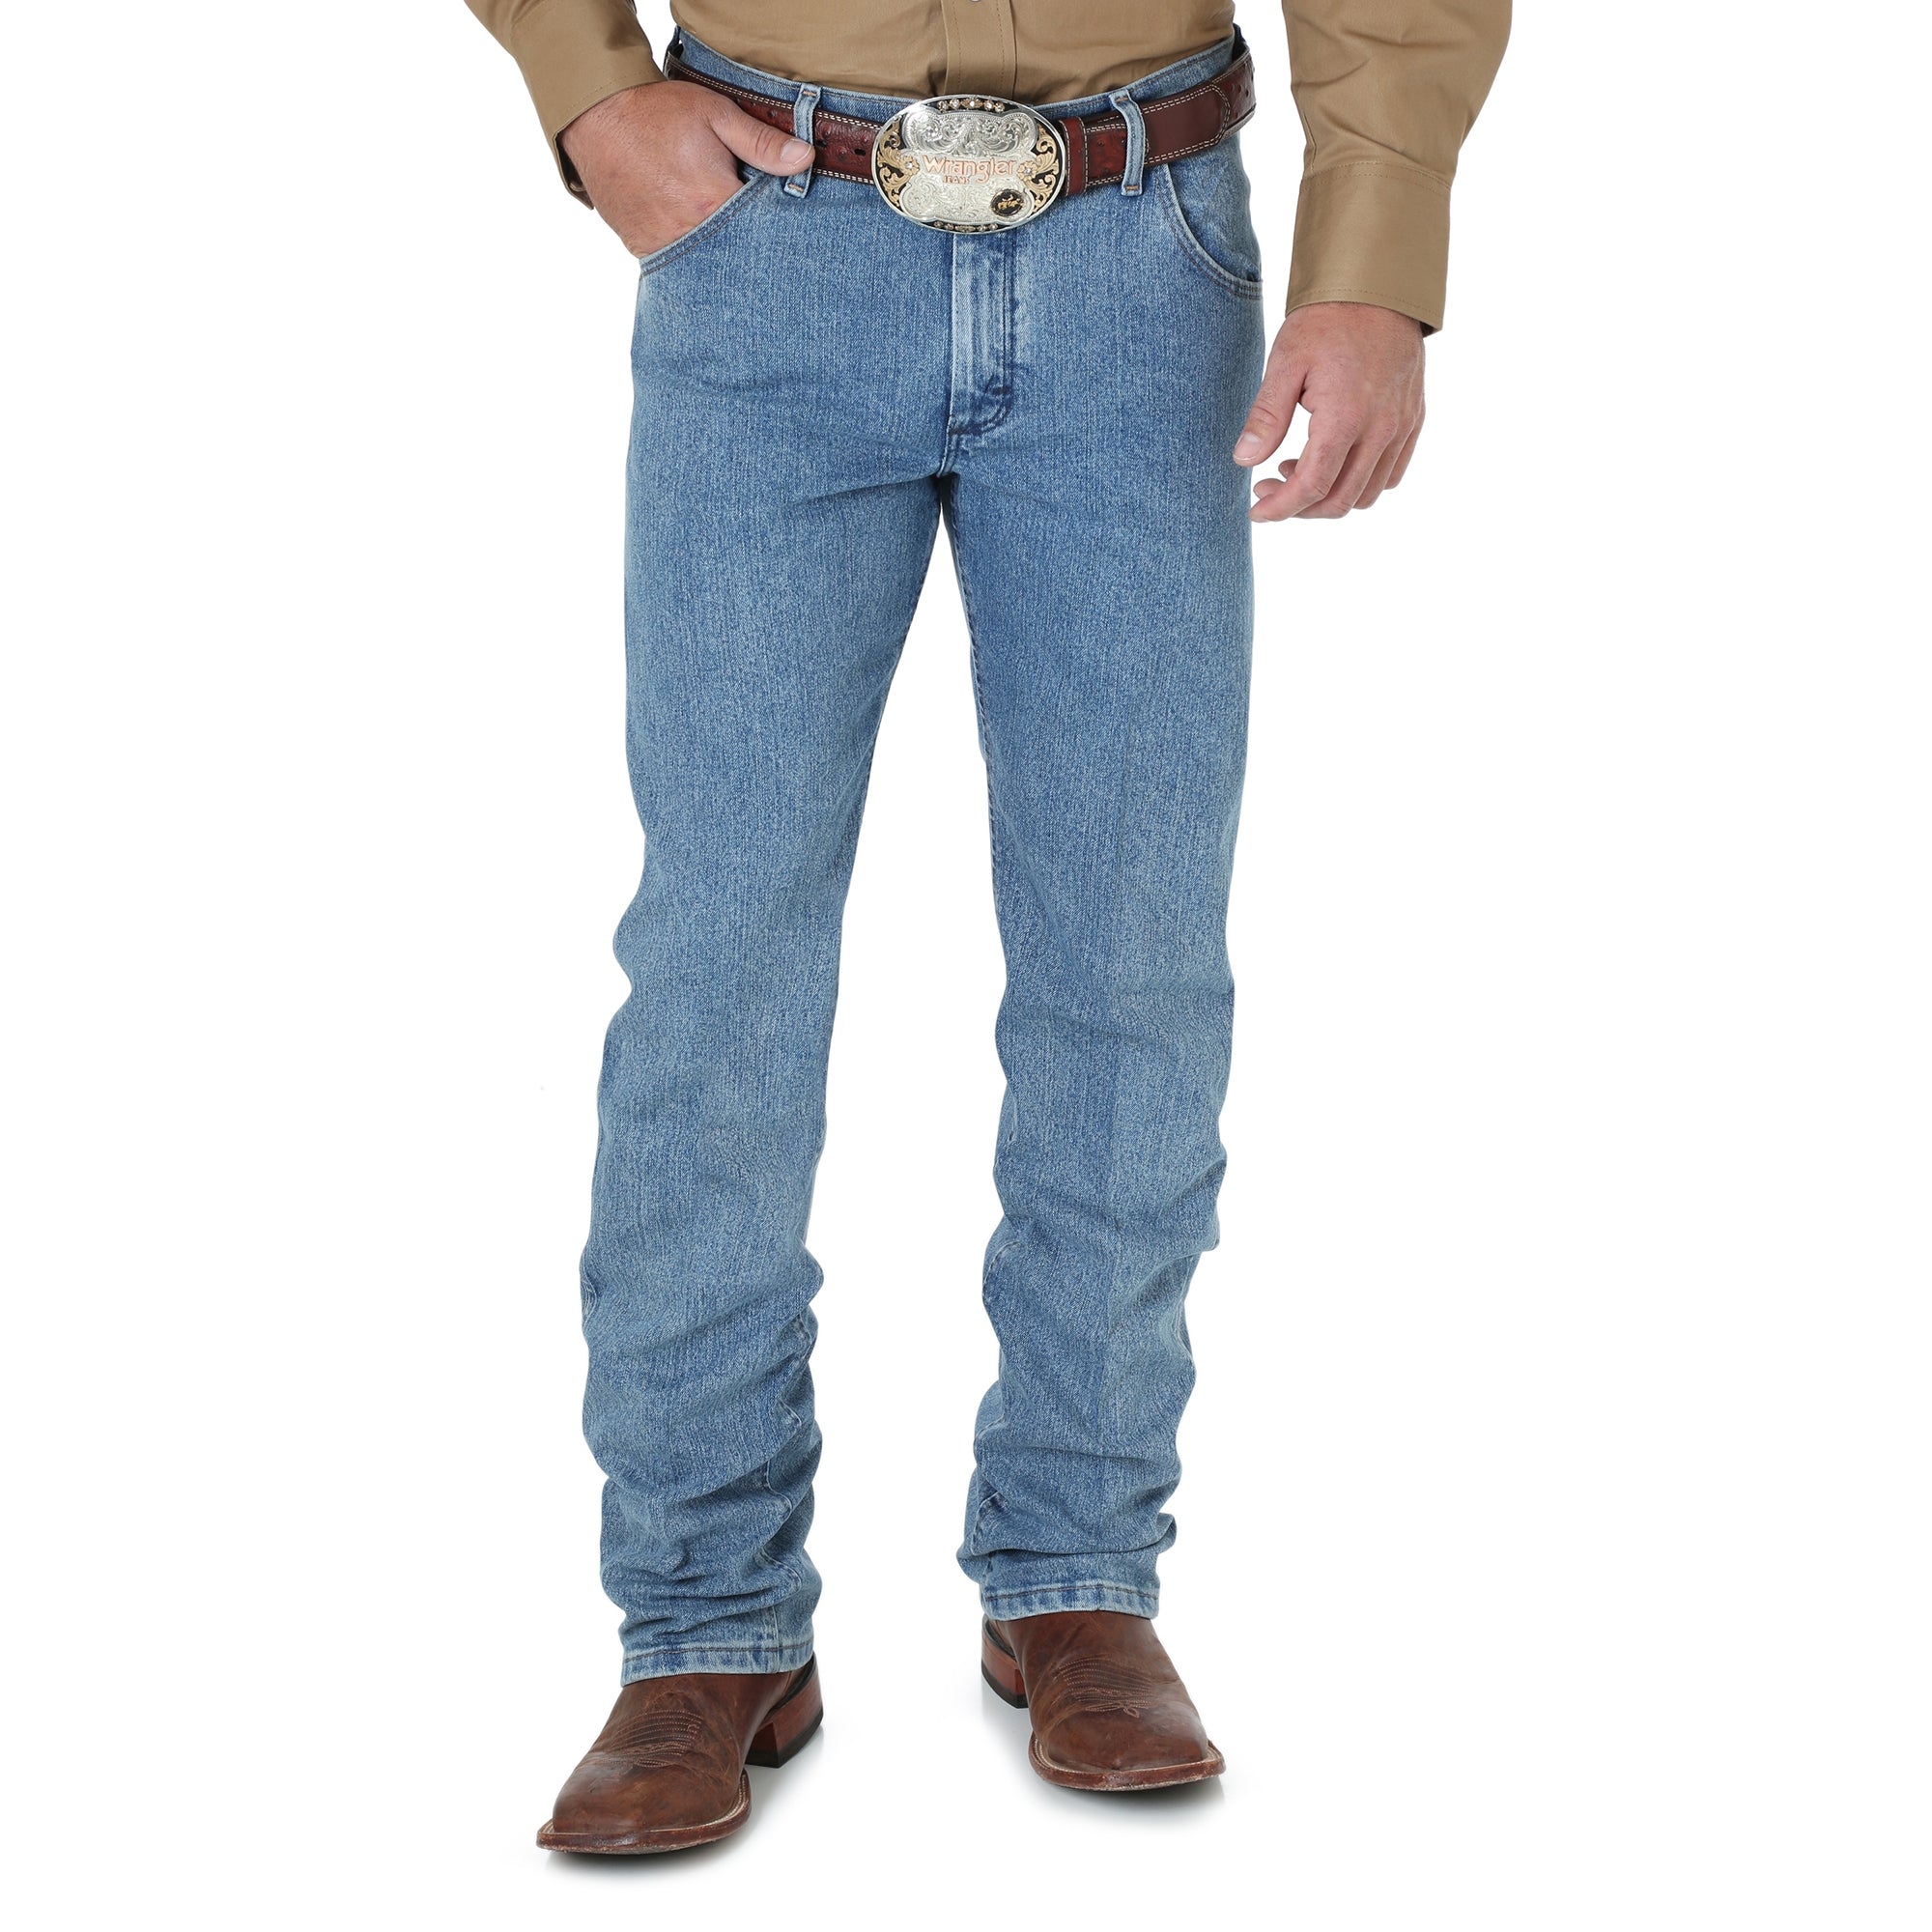 Wrangler Men's George Strait Relaxed Fit Cowboy Cut Jean STYLE 31MGSHD -  Bear Creek Western Store